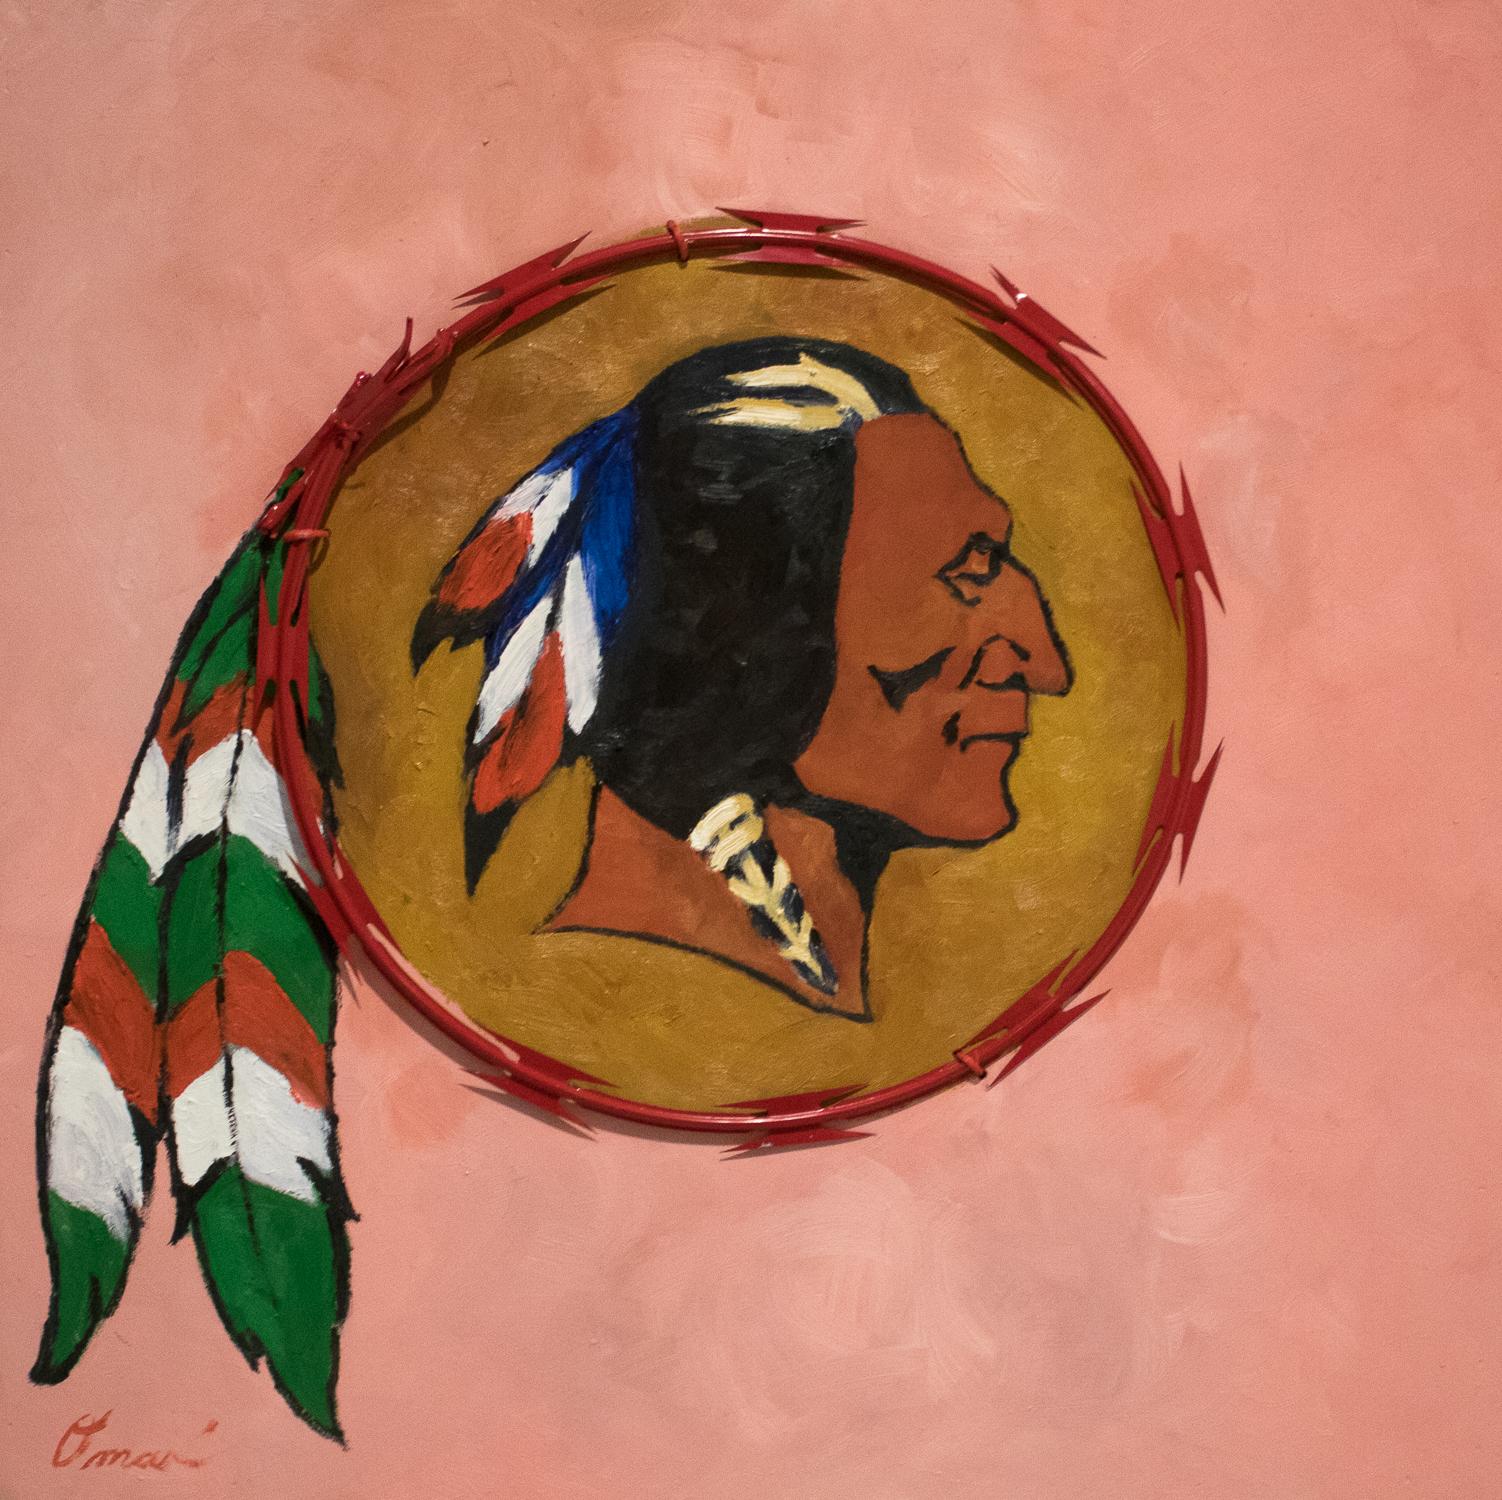 REDSKIN – zeitgenössisches politisches Gemälde, rosa, roter Kammdraht, einheimischer Häuptling – Mixed Media Art von Omari Booker